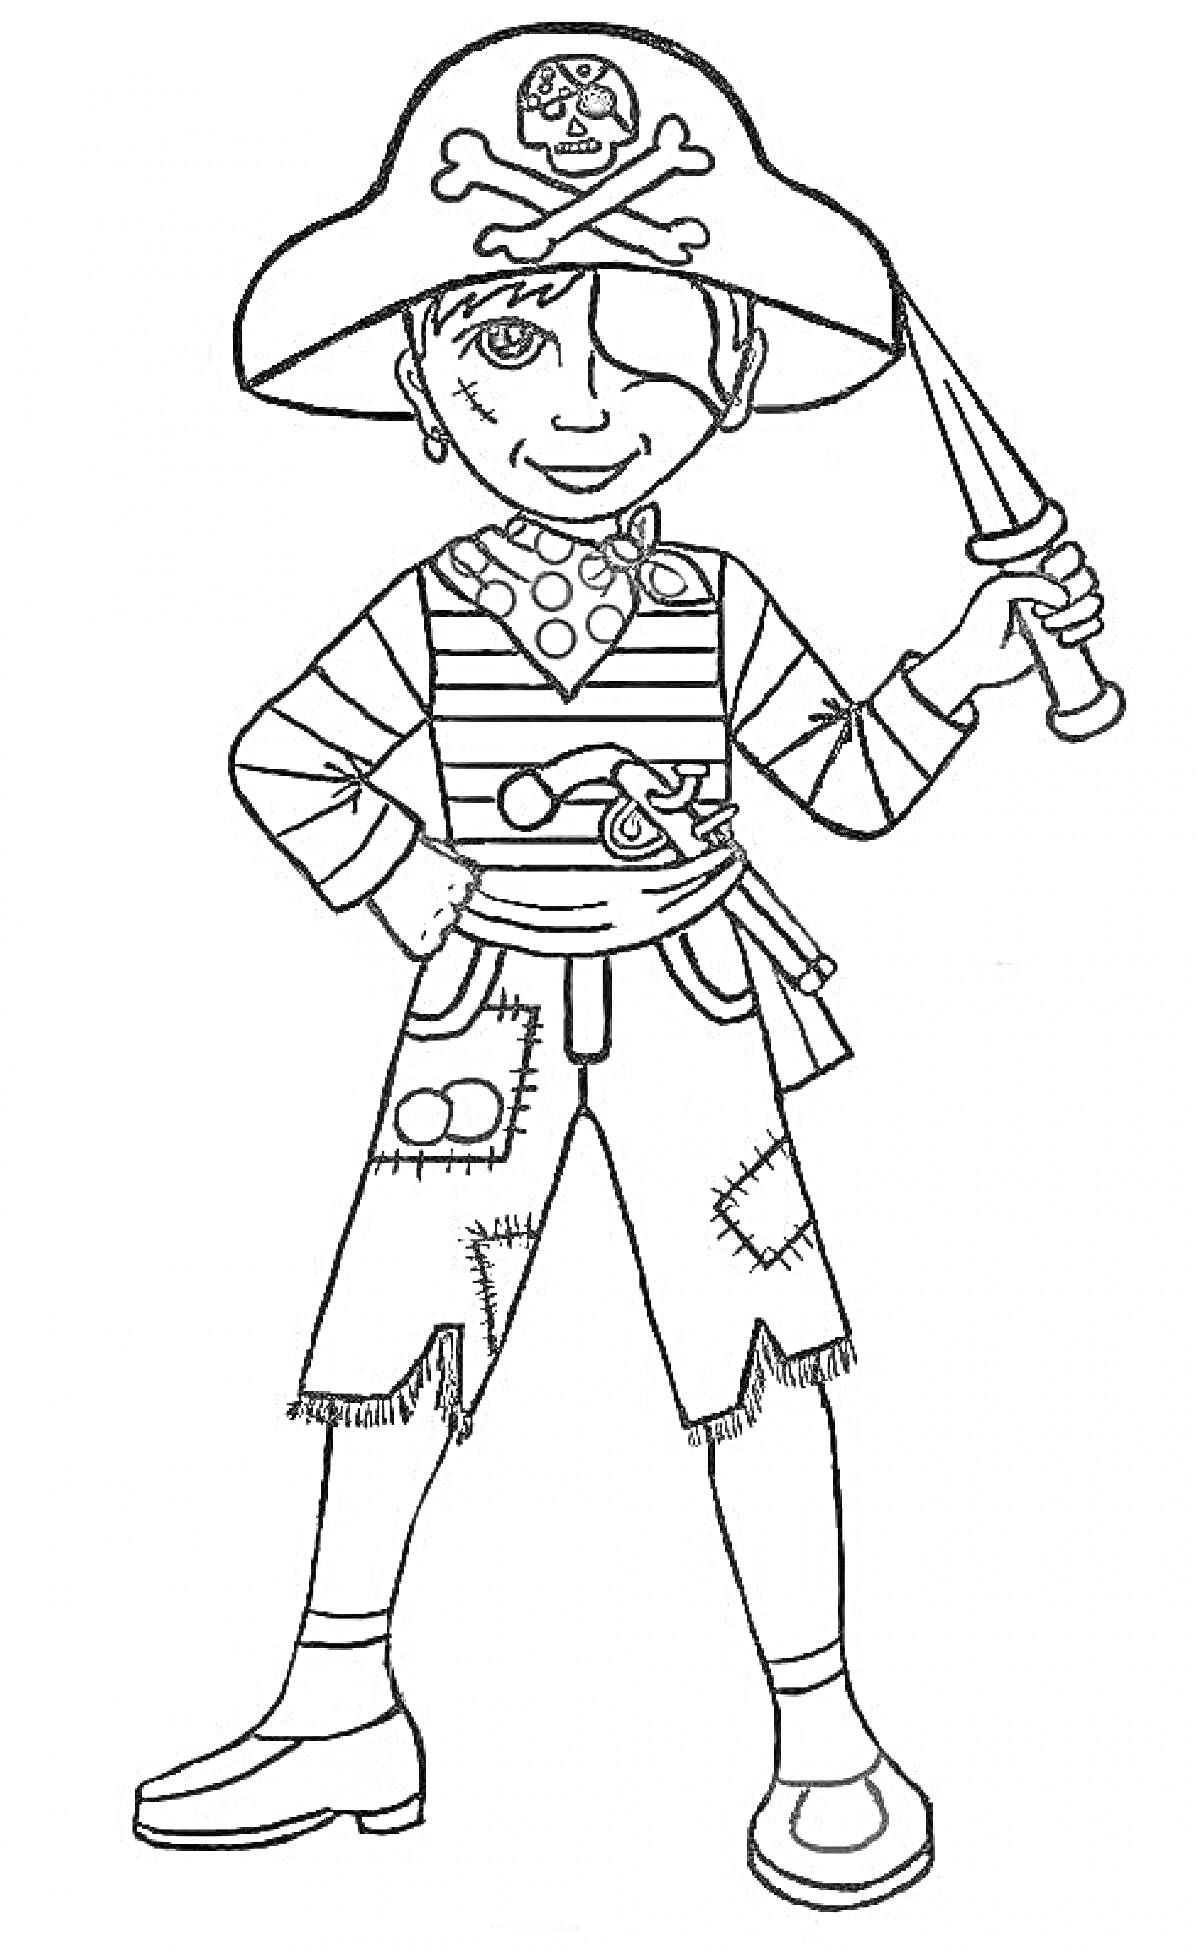 Раскраска Пиратский костюм с попугаем, пиратской шляпой с черепом, полосатым свитером, искусственным мечом, нашивками на штанах и ботинками